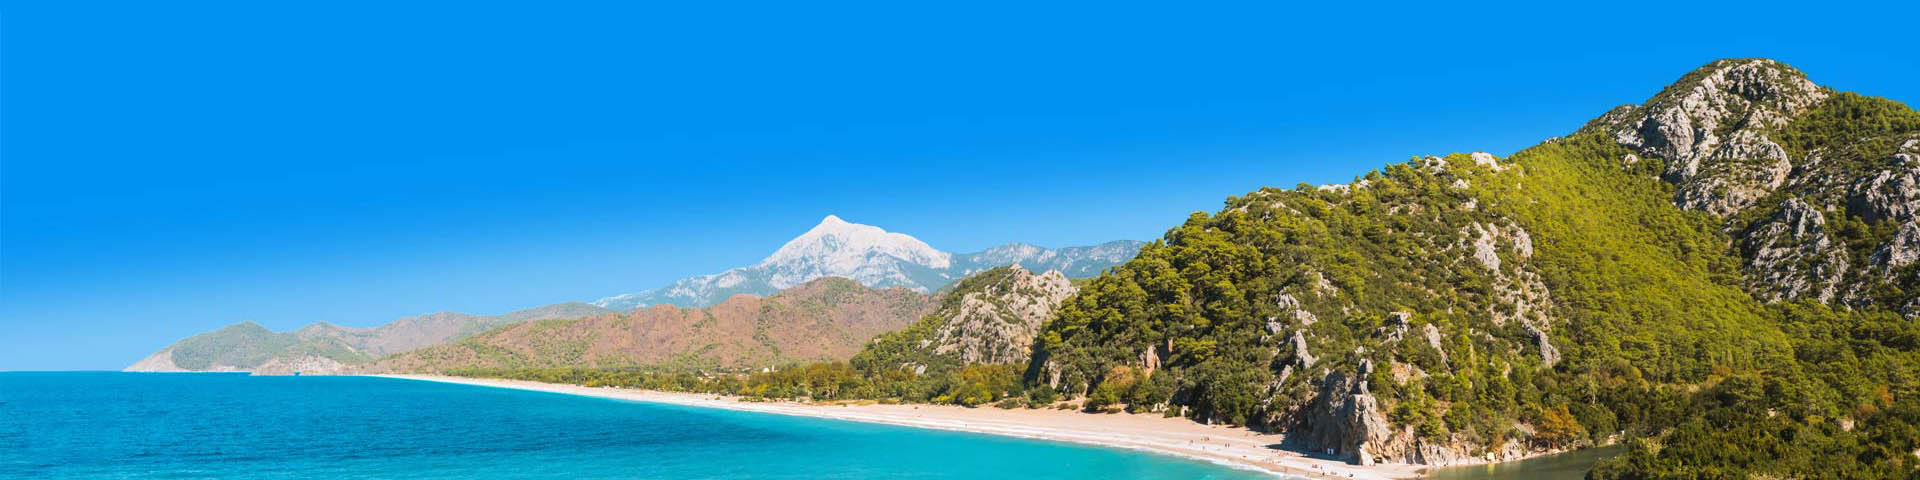 Kraakhelderblauwe zee met groene heuvelachtige rotsen aan de Lycische Kust van Turkije